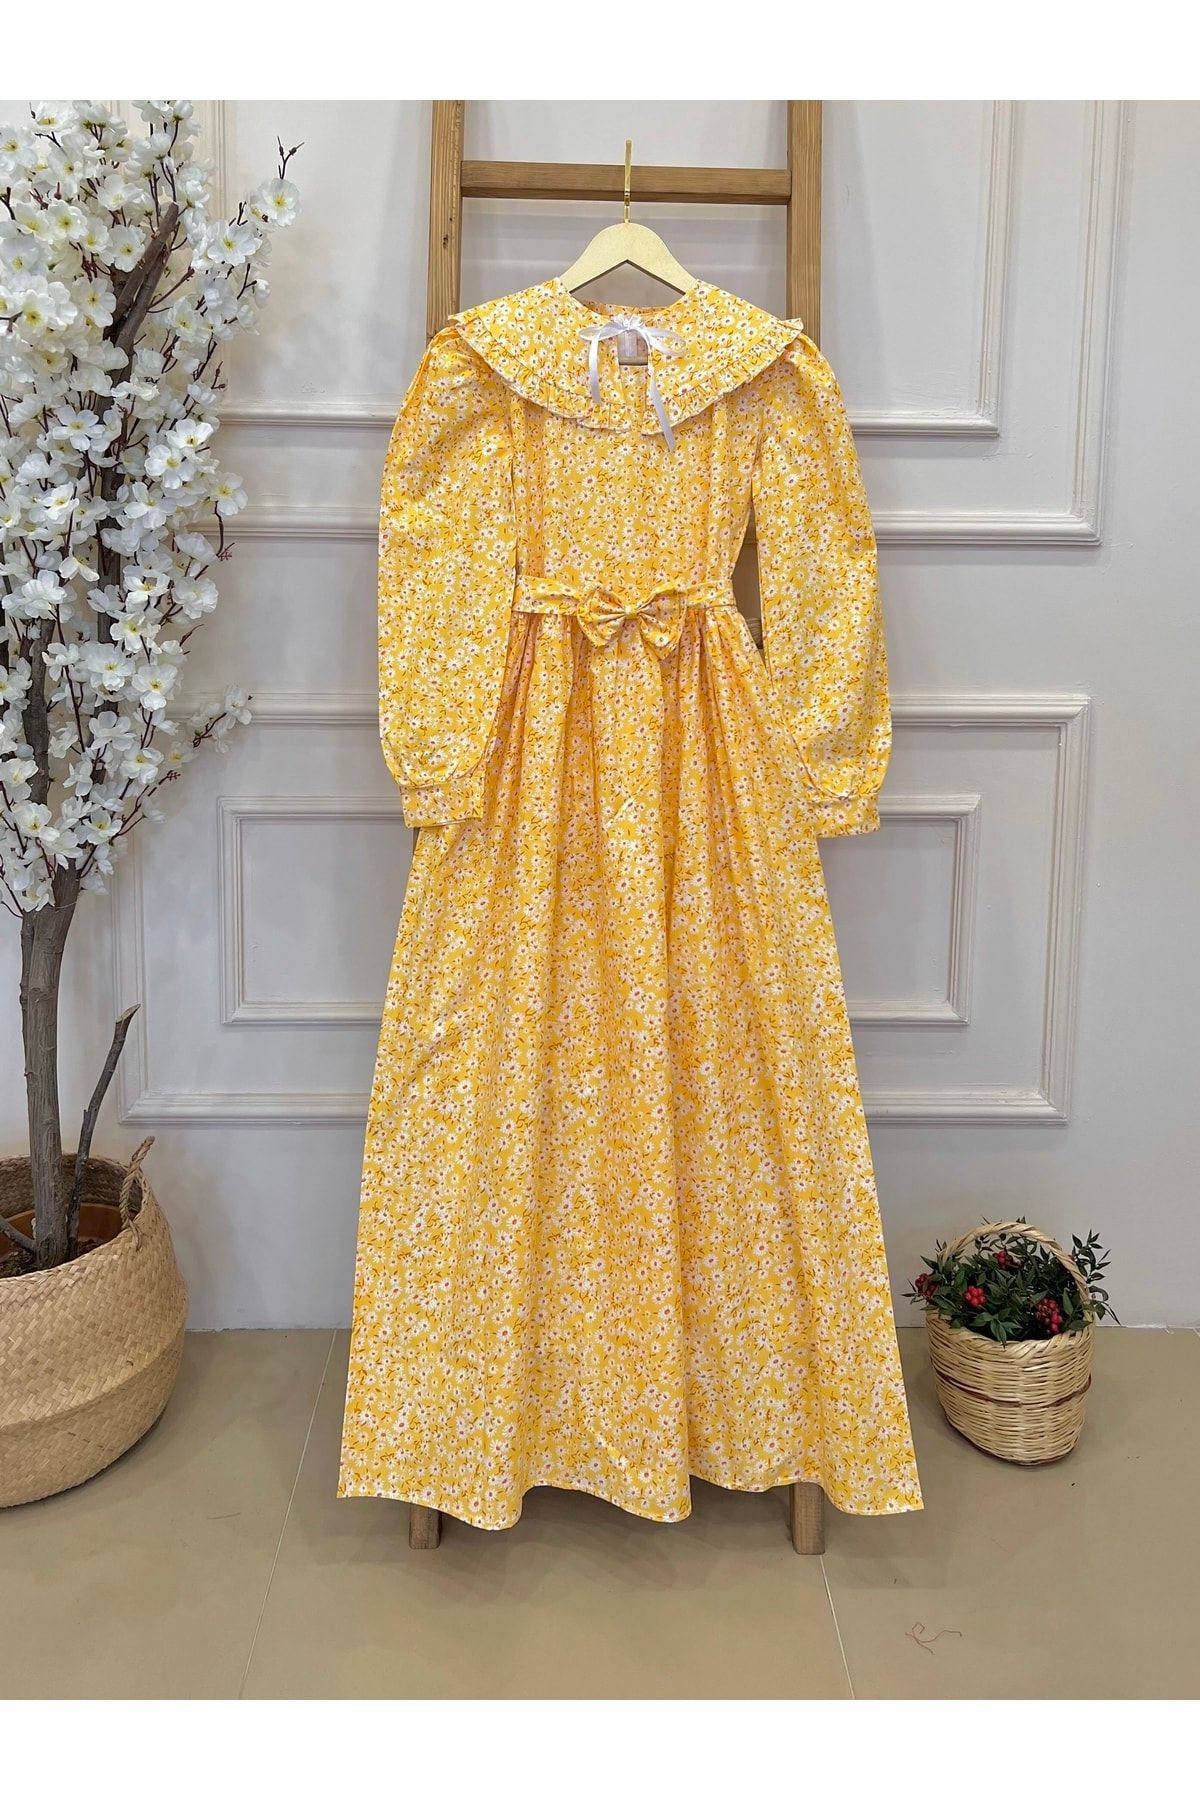 KÜÇÜĞÜM BUTİK Tesettür Seyyar Yakalı Sarı Papatyalı Poplin Elbise